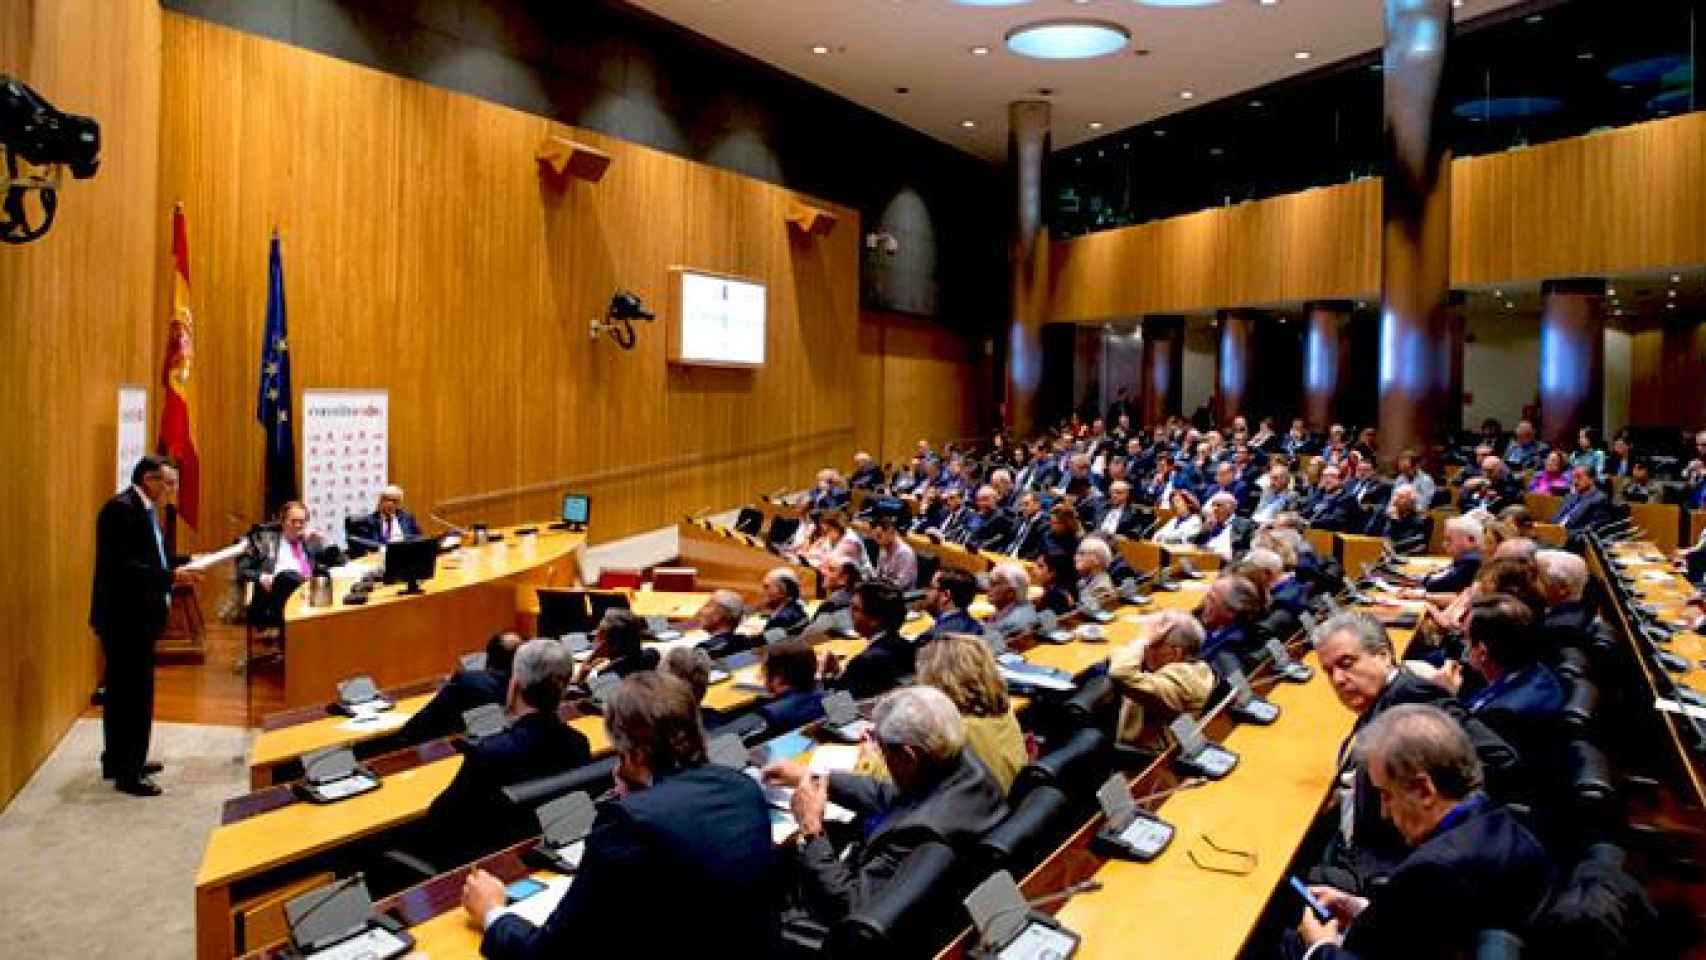 El presidente de Agbar, Angel Simón, reivindica un regulador único para mejorar los servicios públicos en una sesión empresarial en el Congreso de los Diputados / CG